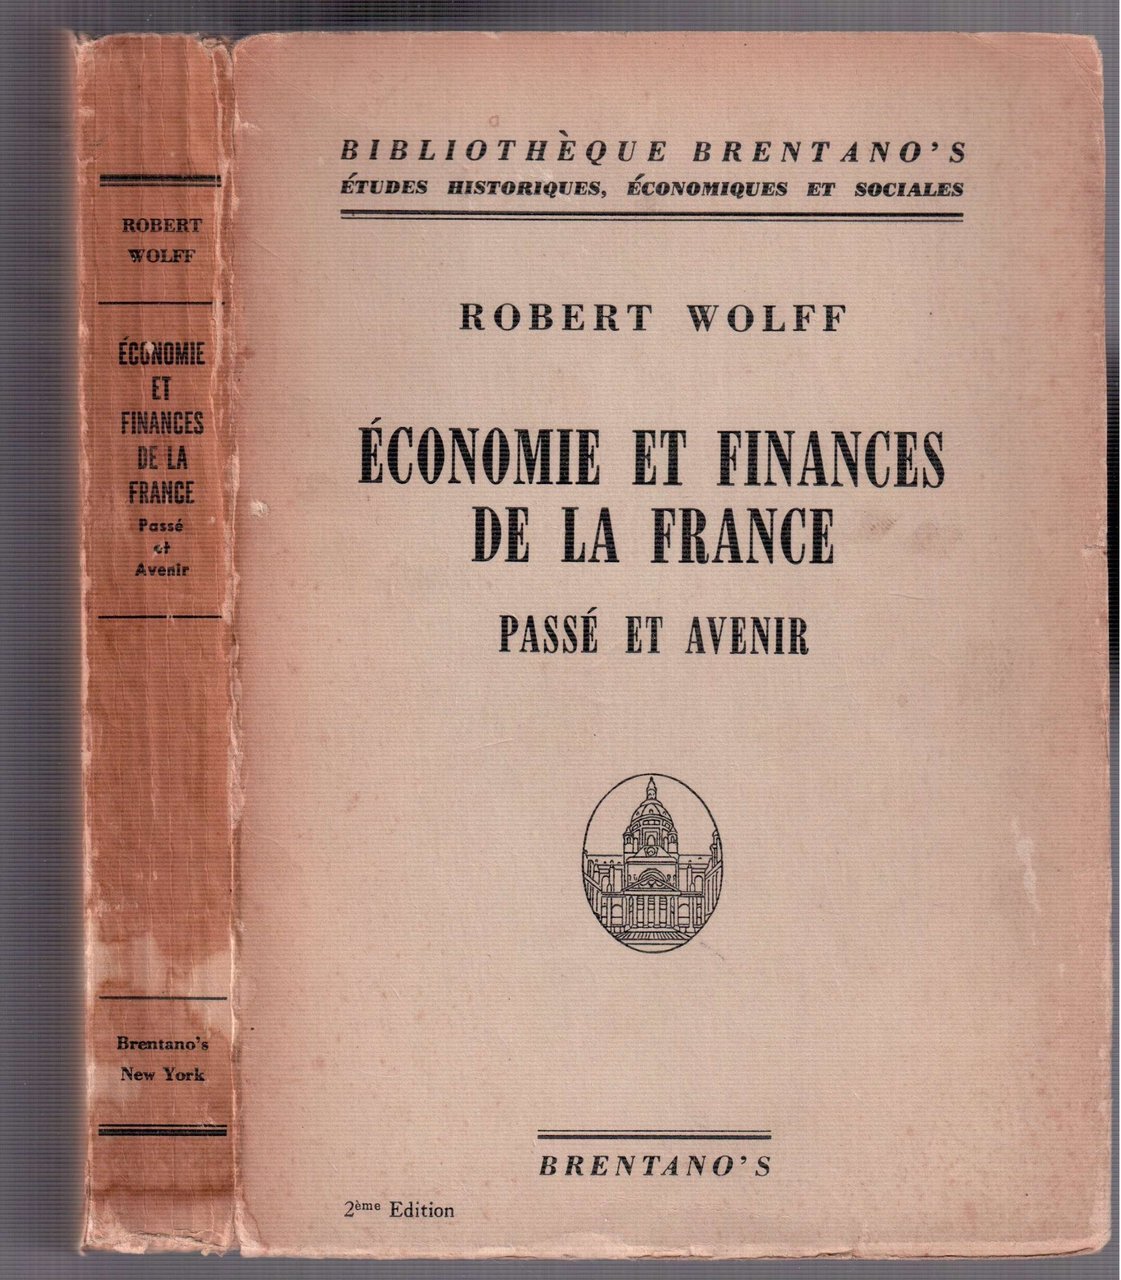 Economie et finances de la France - Passé et avenir